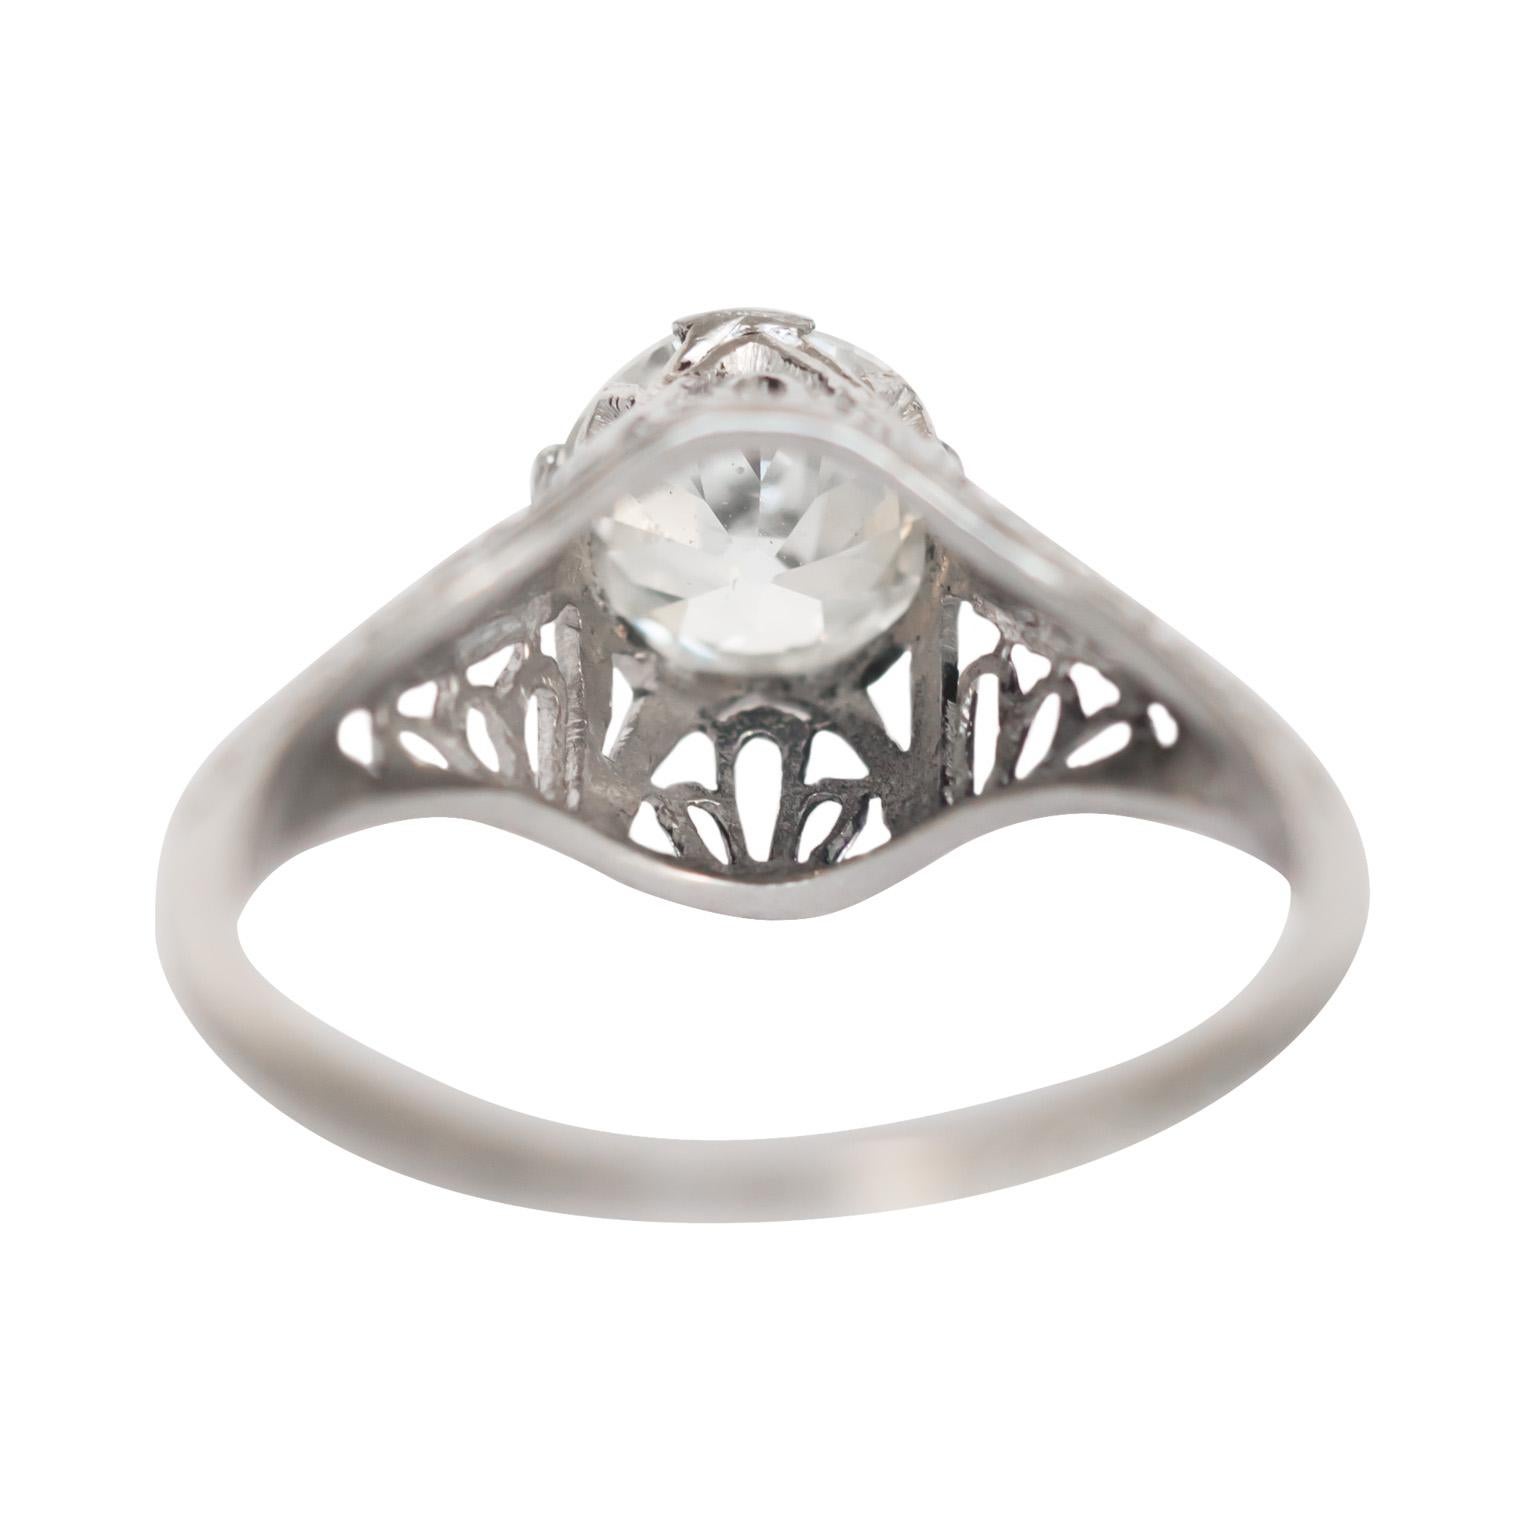 1.05 Carat Diamond Platinum Engagement Ring In Good Condition For Sale In Atlanta, GA